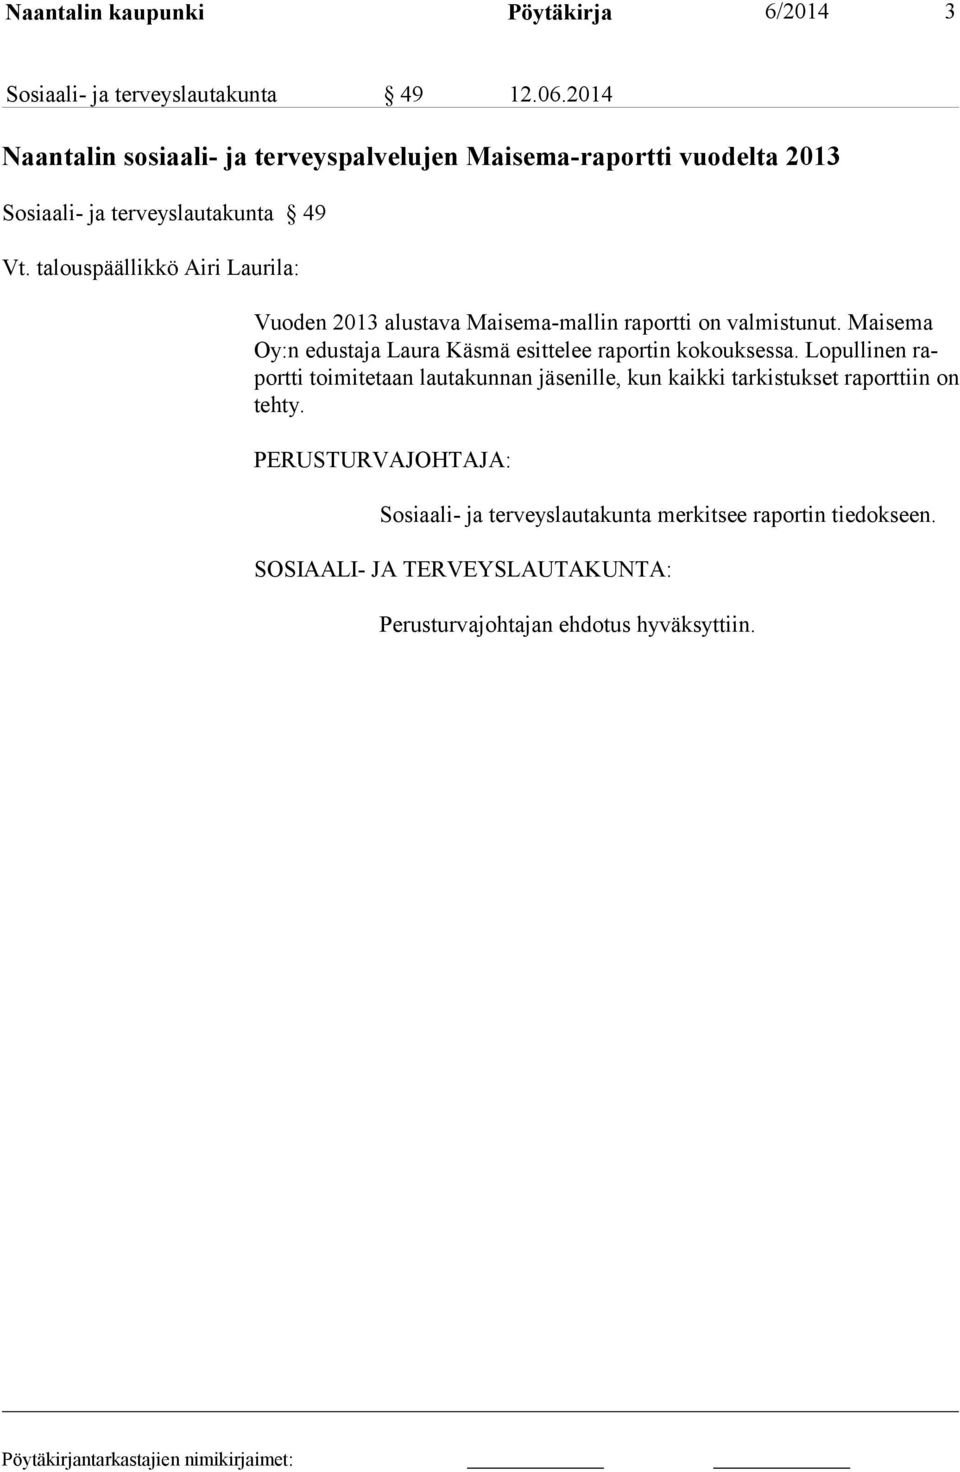 talouspäällikkö Airi Laurila: Vuoden 2013 alustava Maisema-mallin raportti on valmistunut.